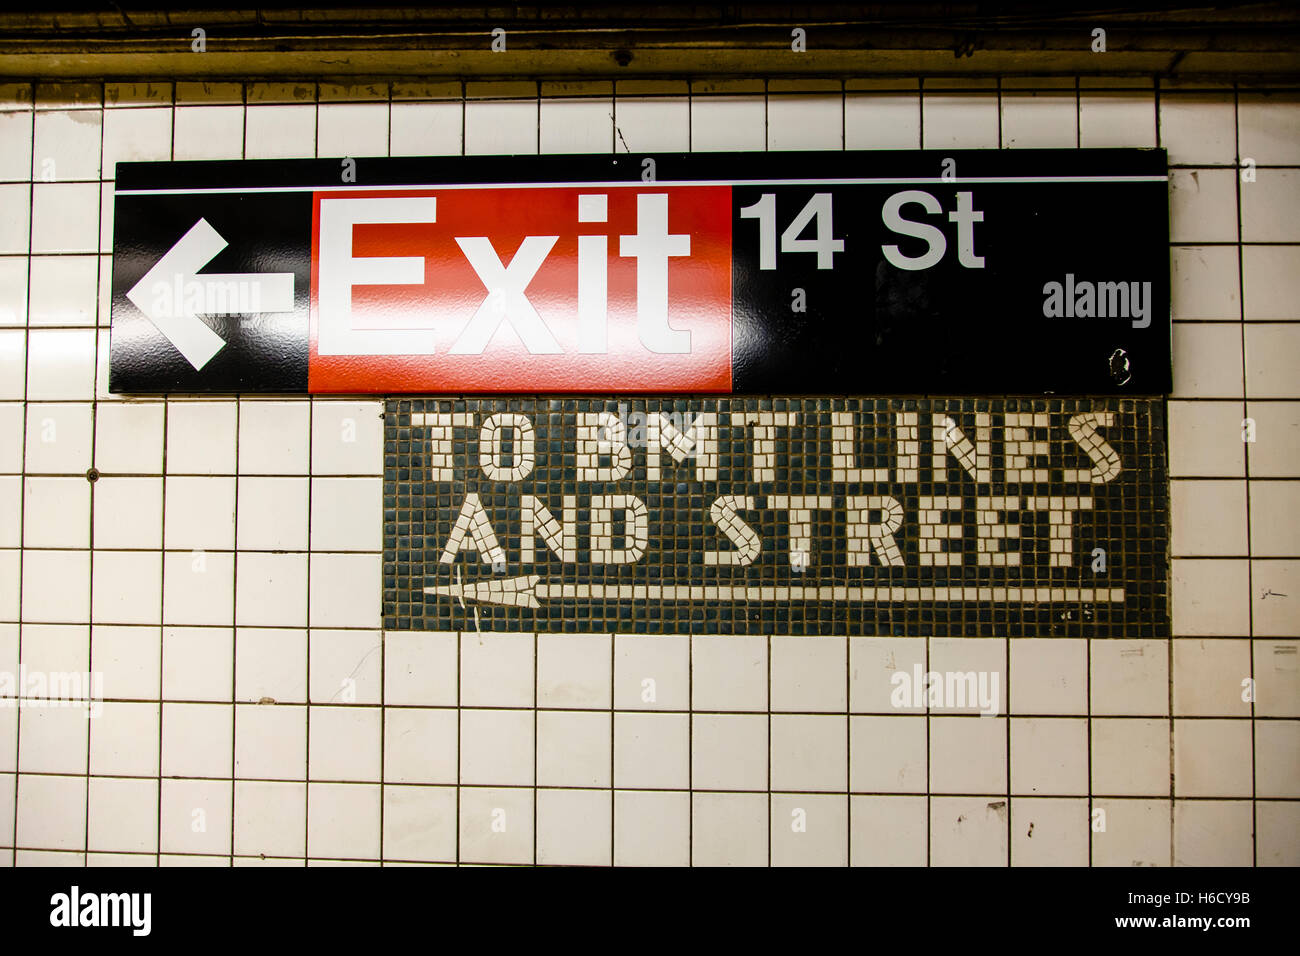 Inscrivez-vous dans une station de métro de New-York qui marque la 14e rue. sortie. Banque D'Images